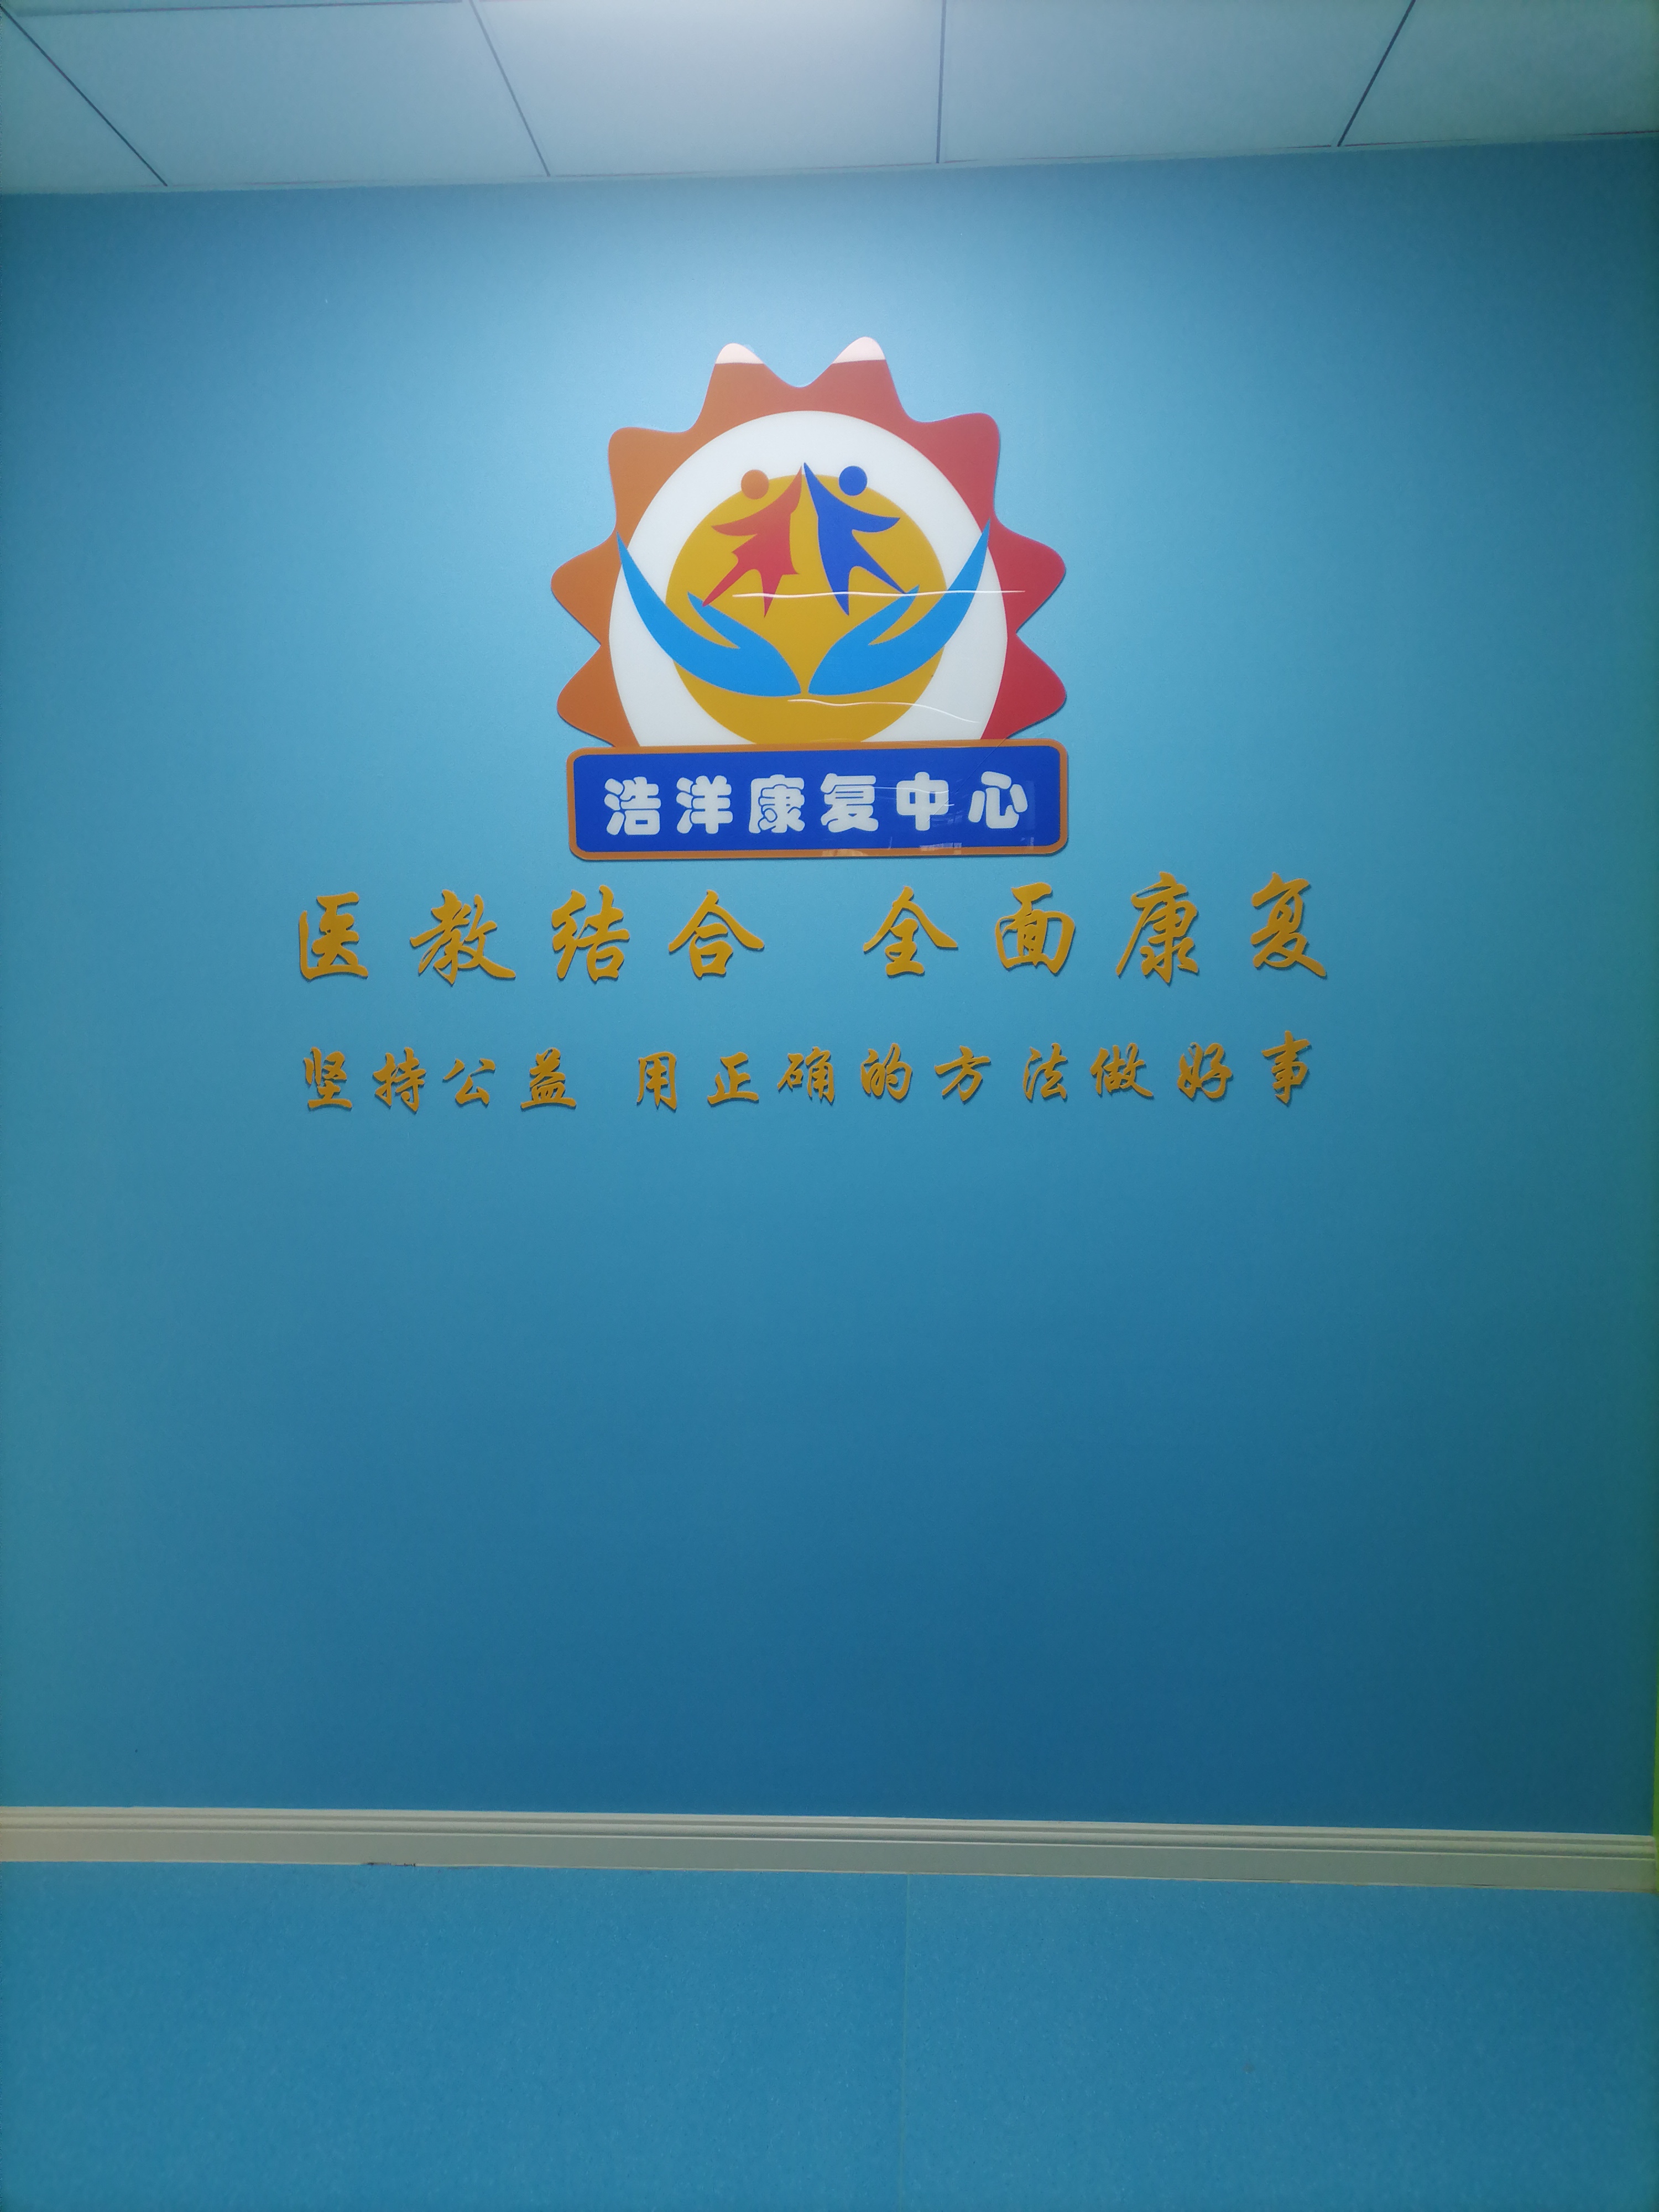 沧州市狮城浩洋社会工作服务中心